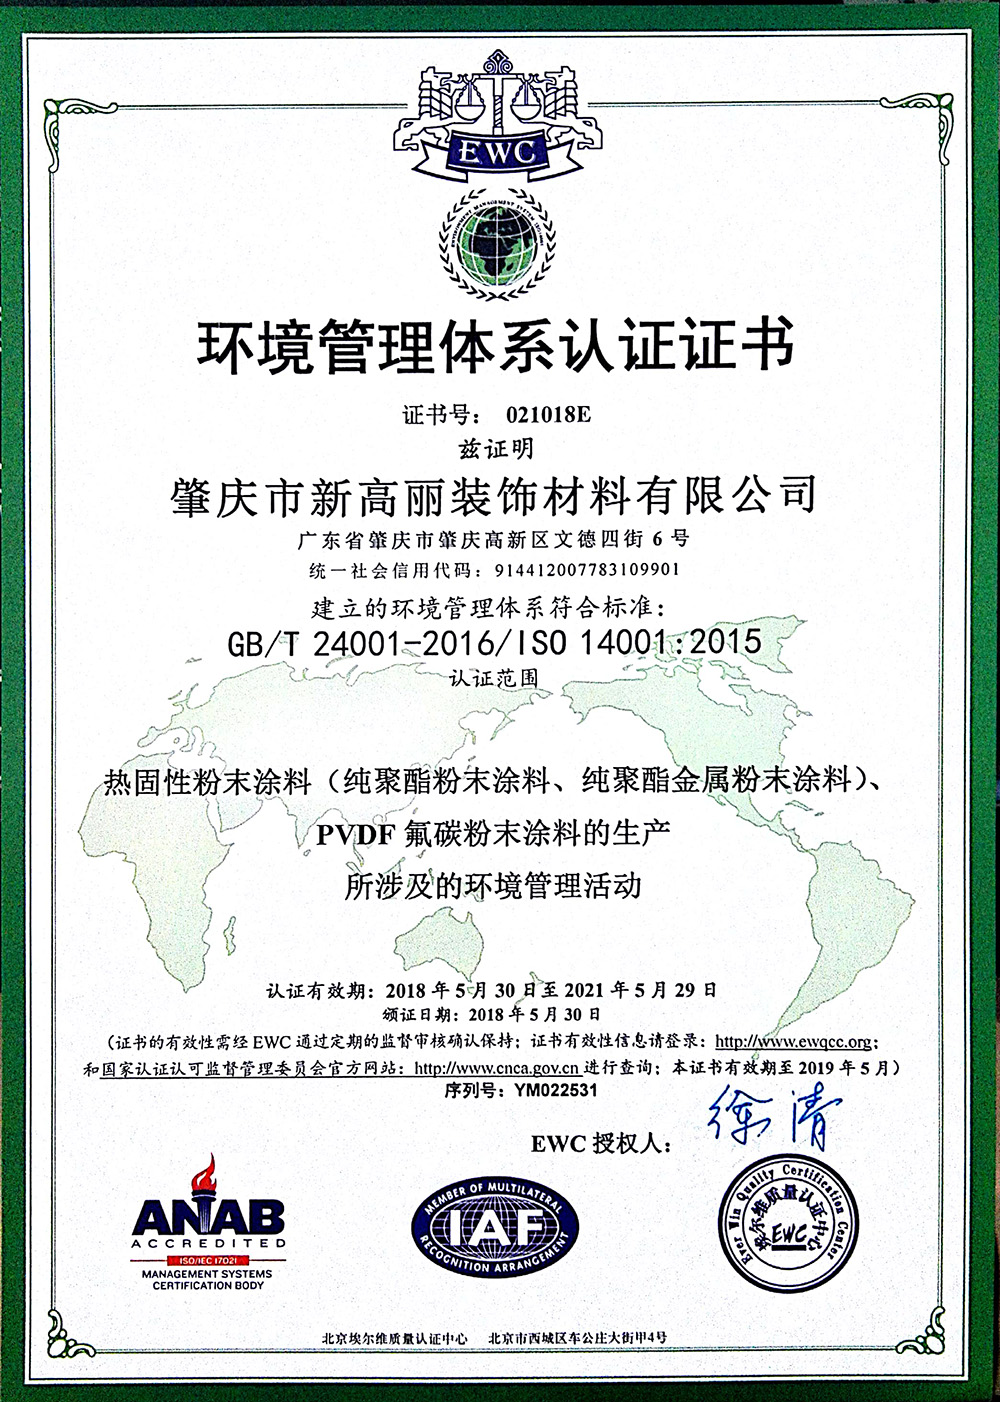 肇庆新高丽-环境管理体系认证证书（18-21）